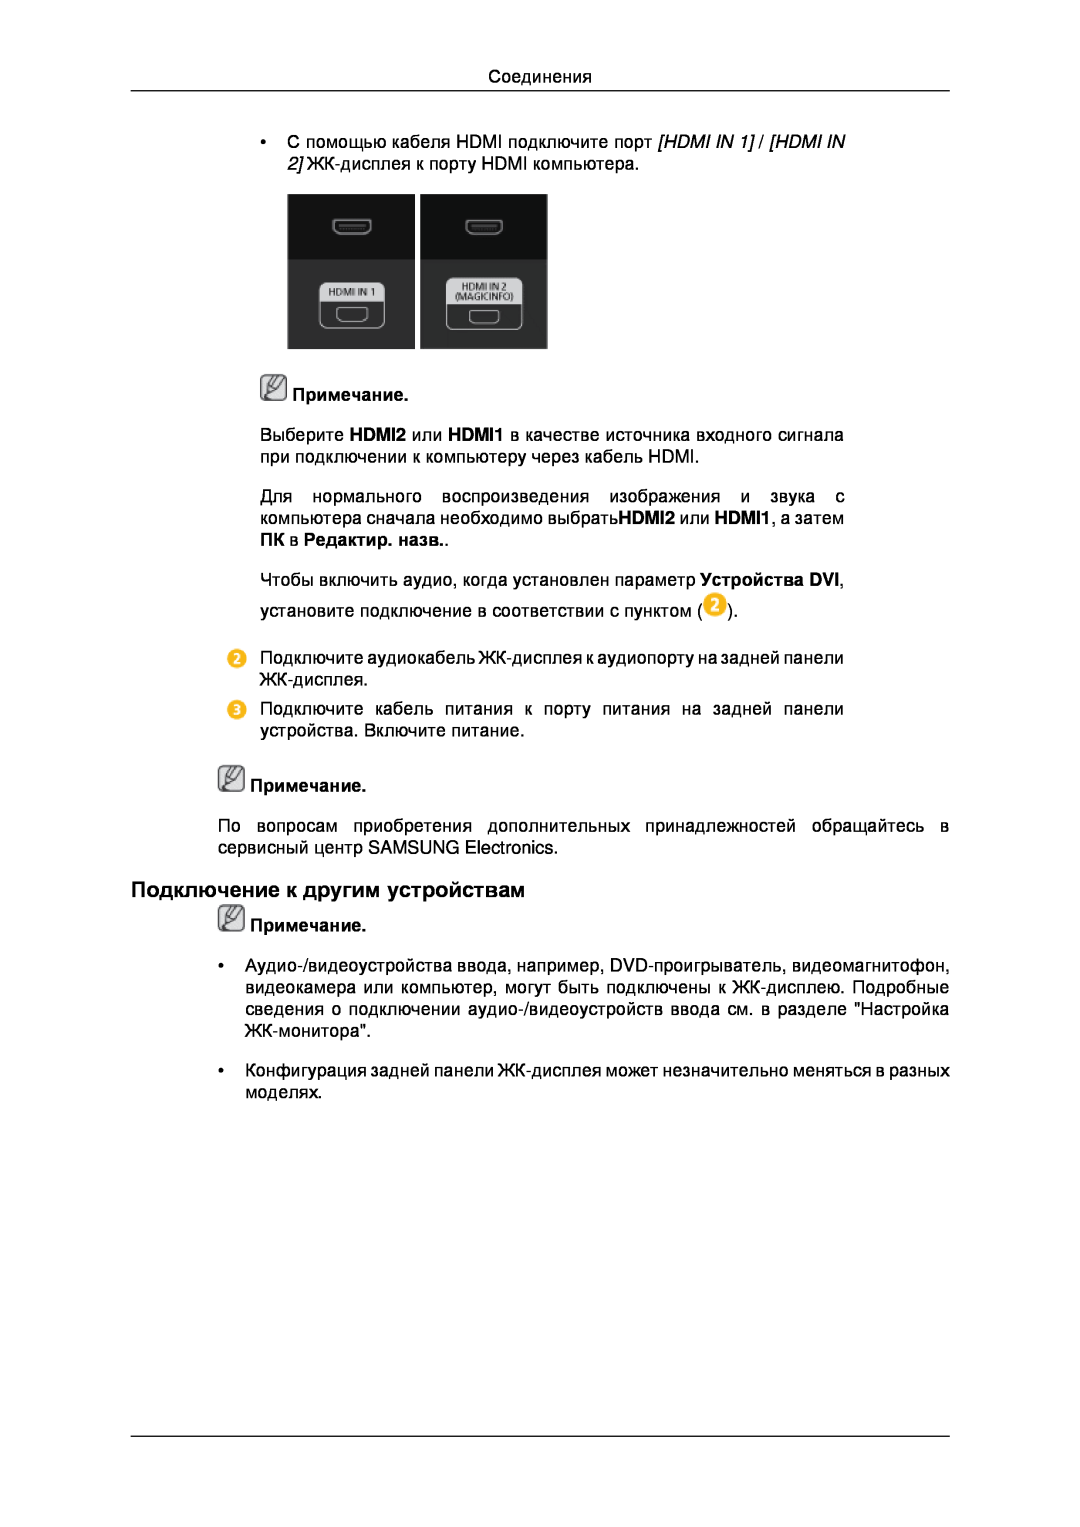 Samsung LH32CRTMBC/EN, LH32CRSMBD/EN manual Подключение к другим устройствам, Примечание 